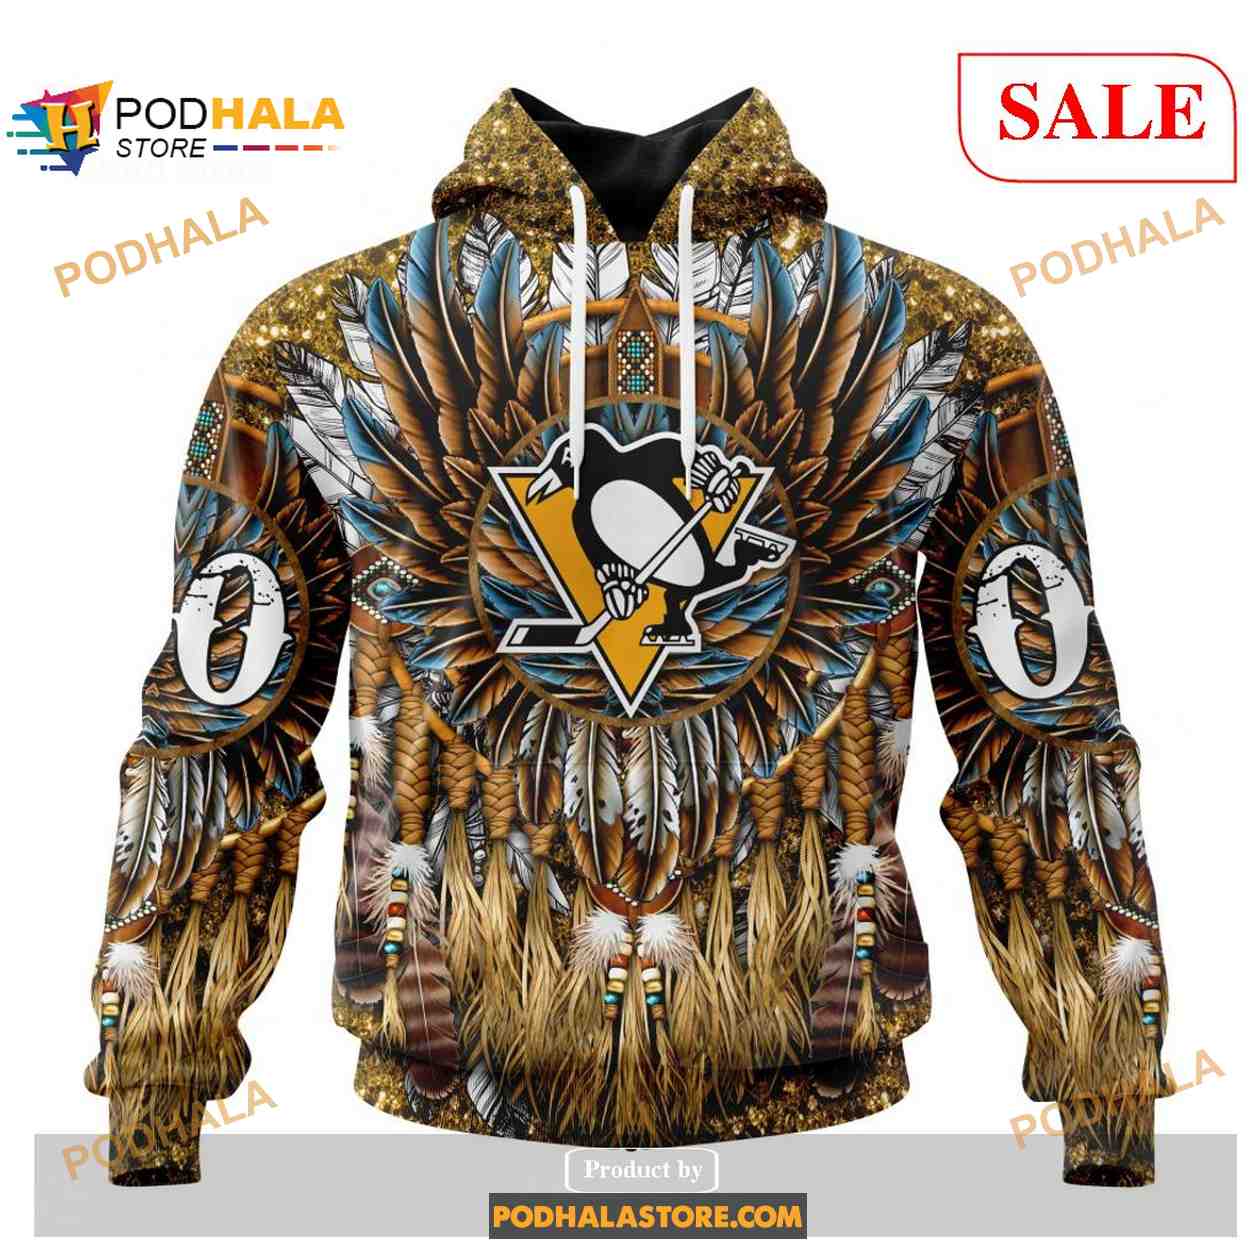 Size 4XL Men Pittsburgh Penguins NHL Fan Apparel & Souvenirs for sale